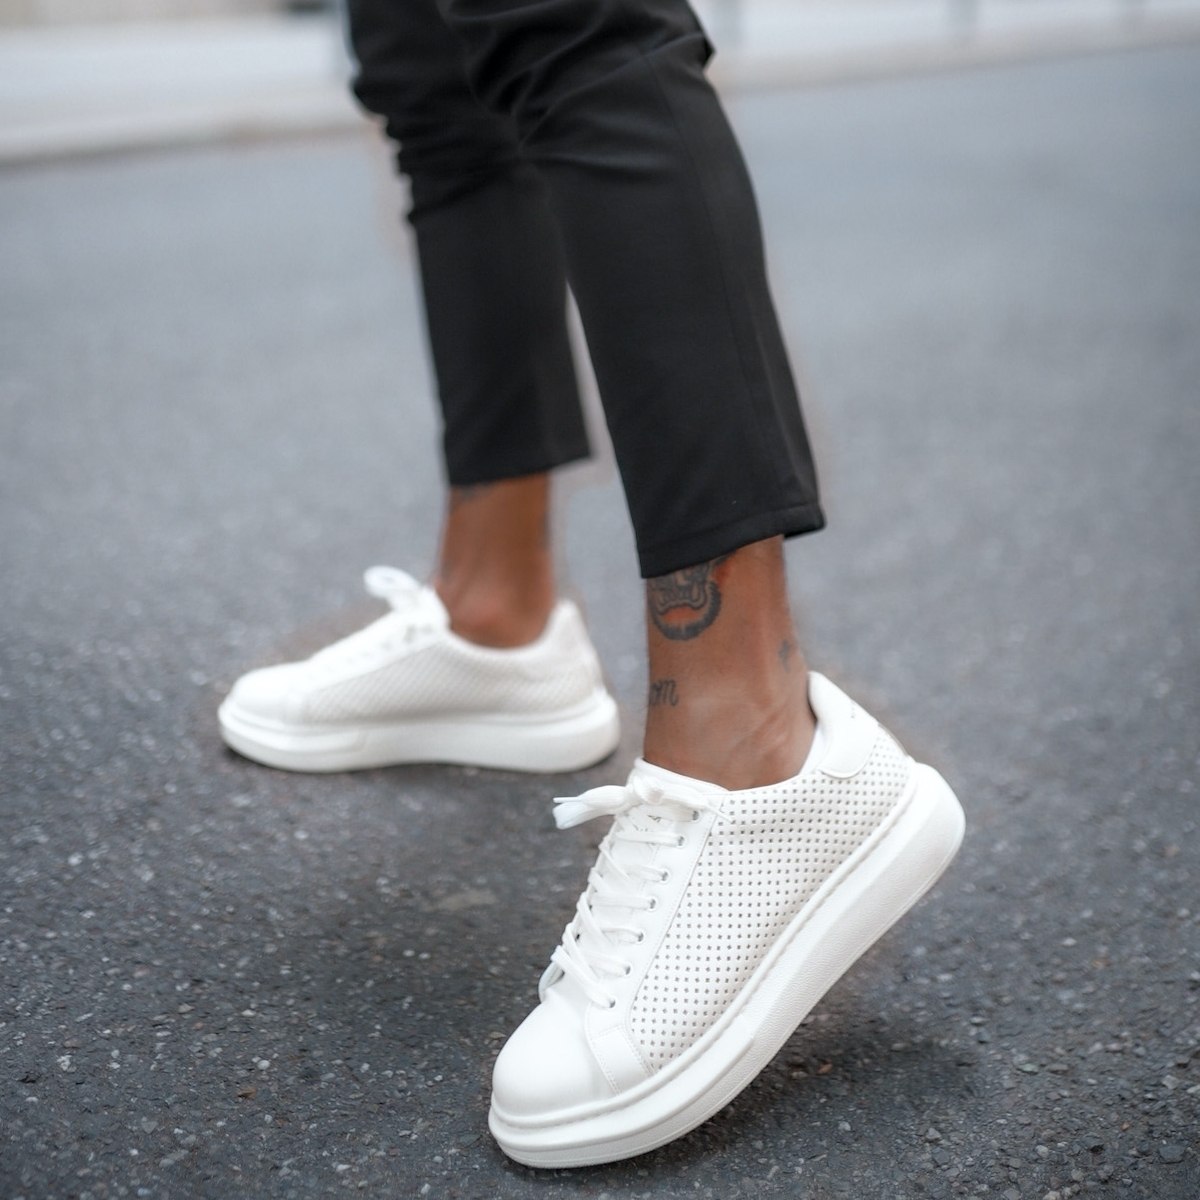 Men’s Designer Mesh Sneakers Shoes White